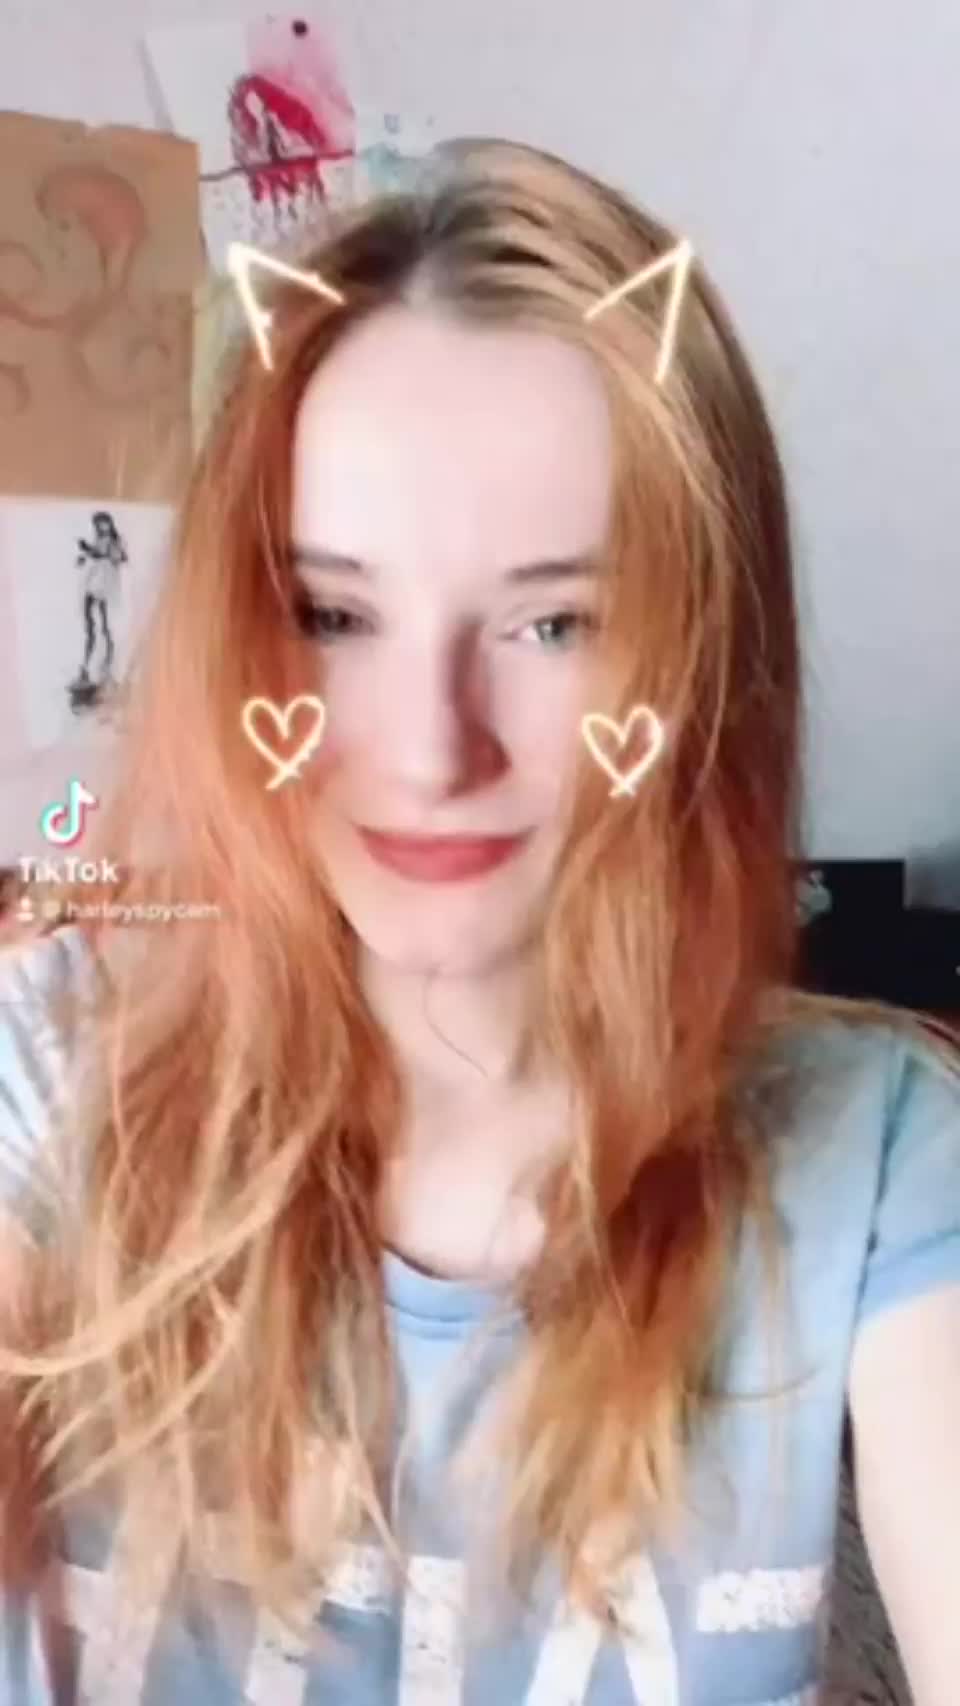 harleyspy redhead with great tits